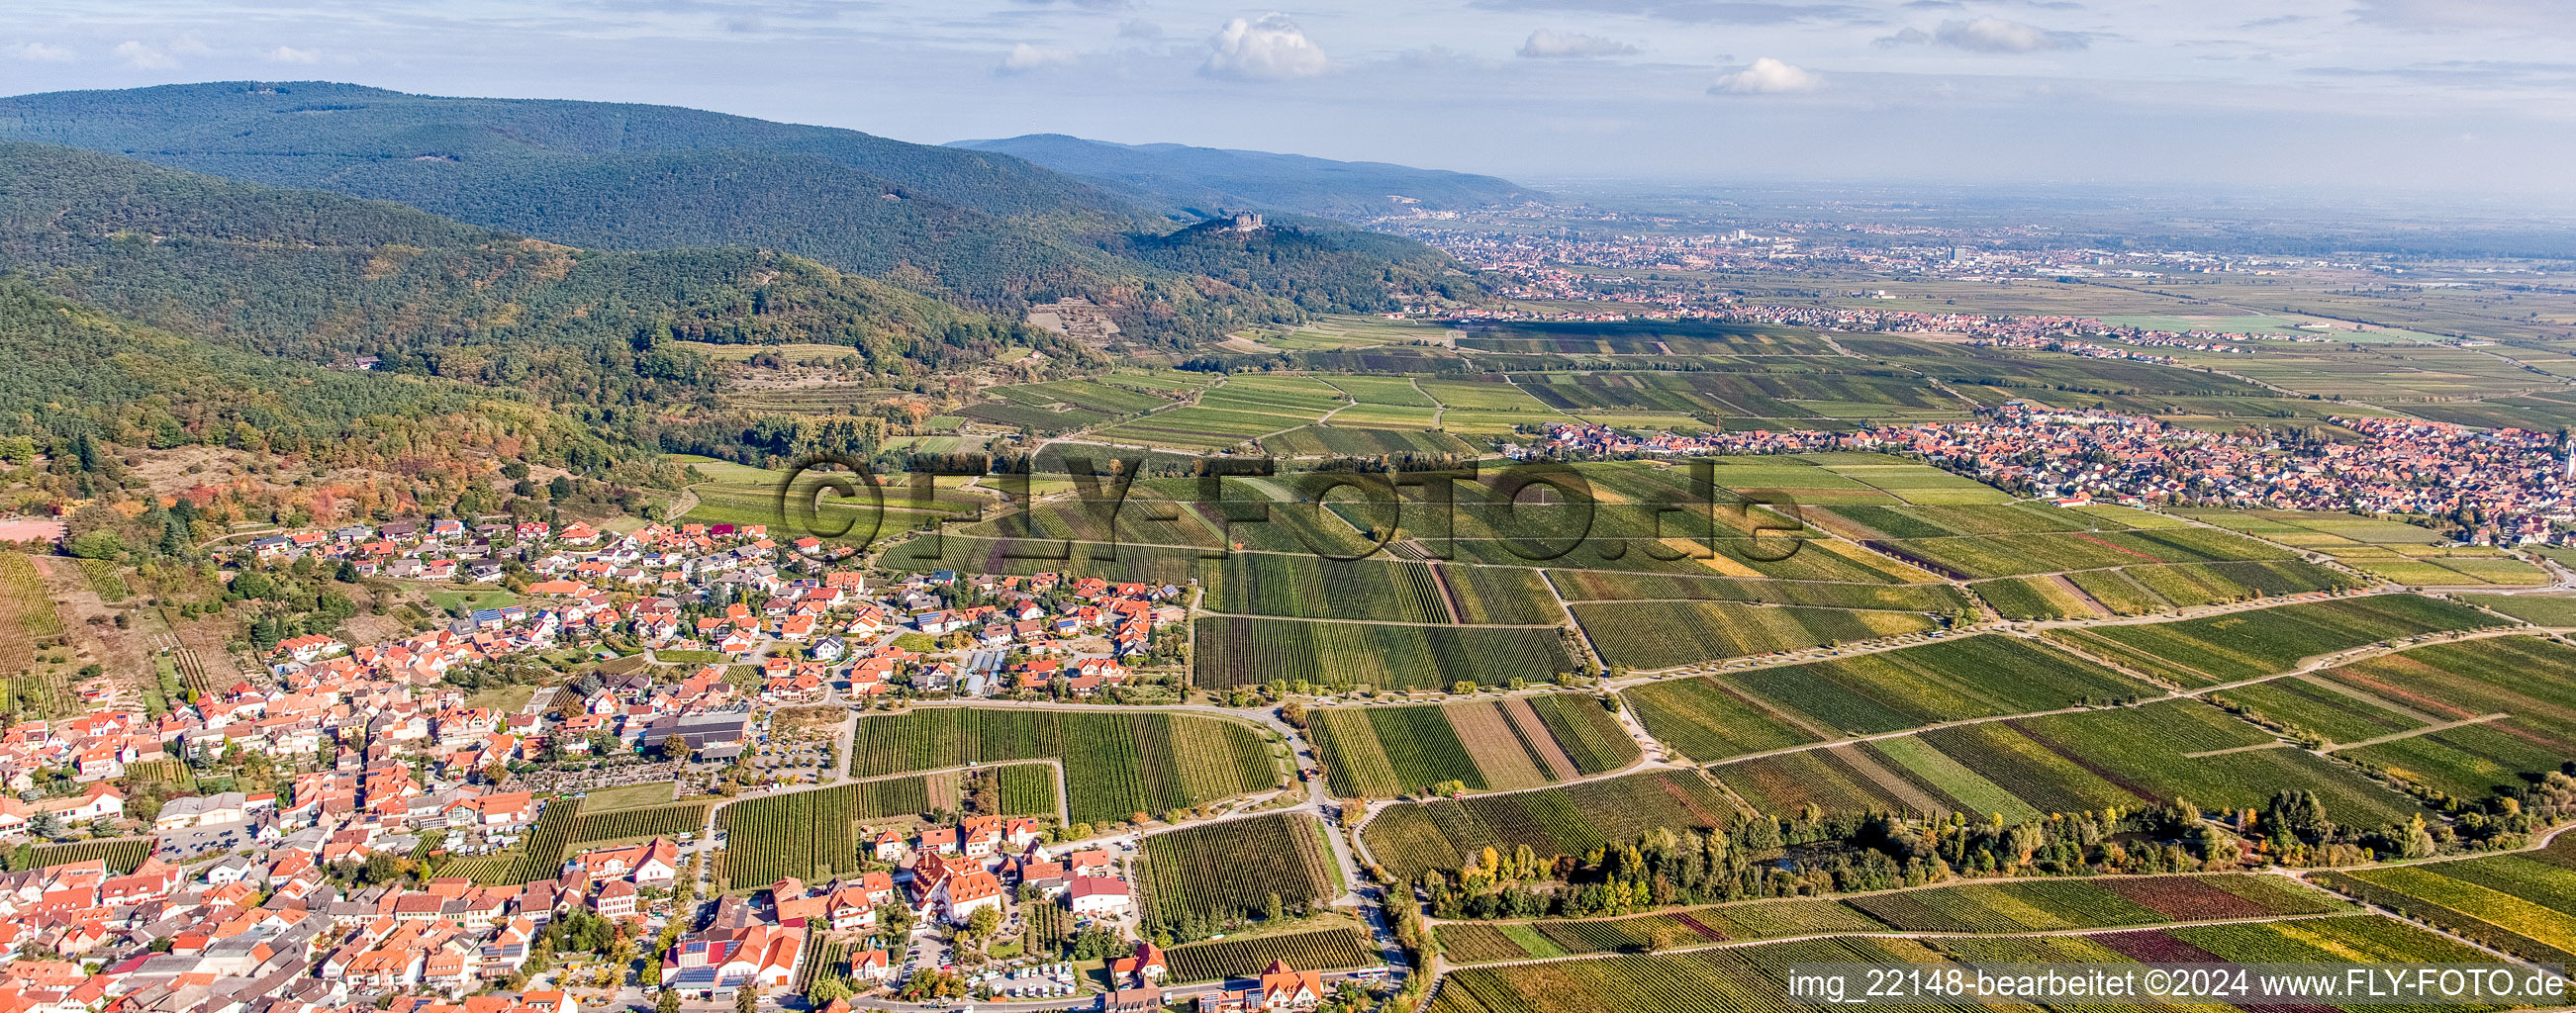 Vue aérienne de Vue sur la plaine du Rhin, à la lisière du Haardt de la forêt du Palatinat, entre vignes à Sankt Martin dans le département Rhénanie-Palatinat, Allemagne